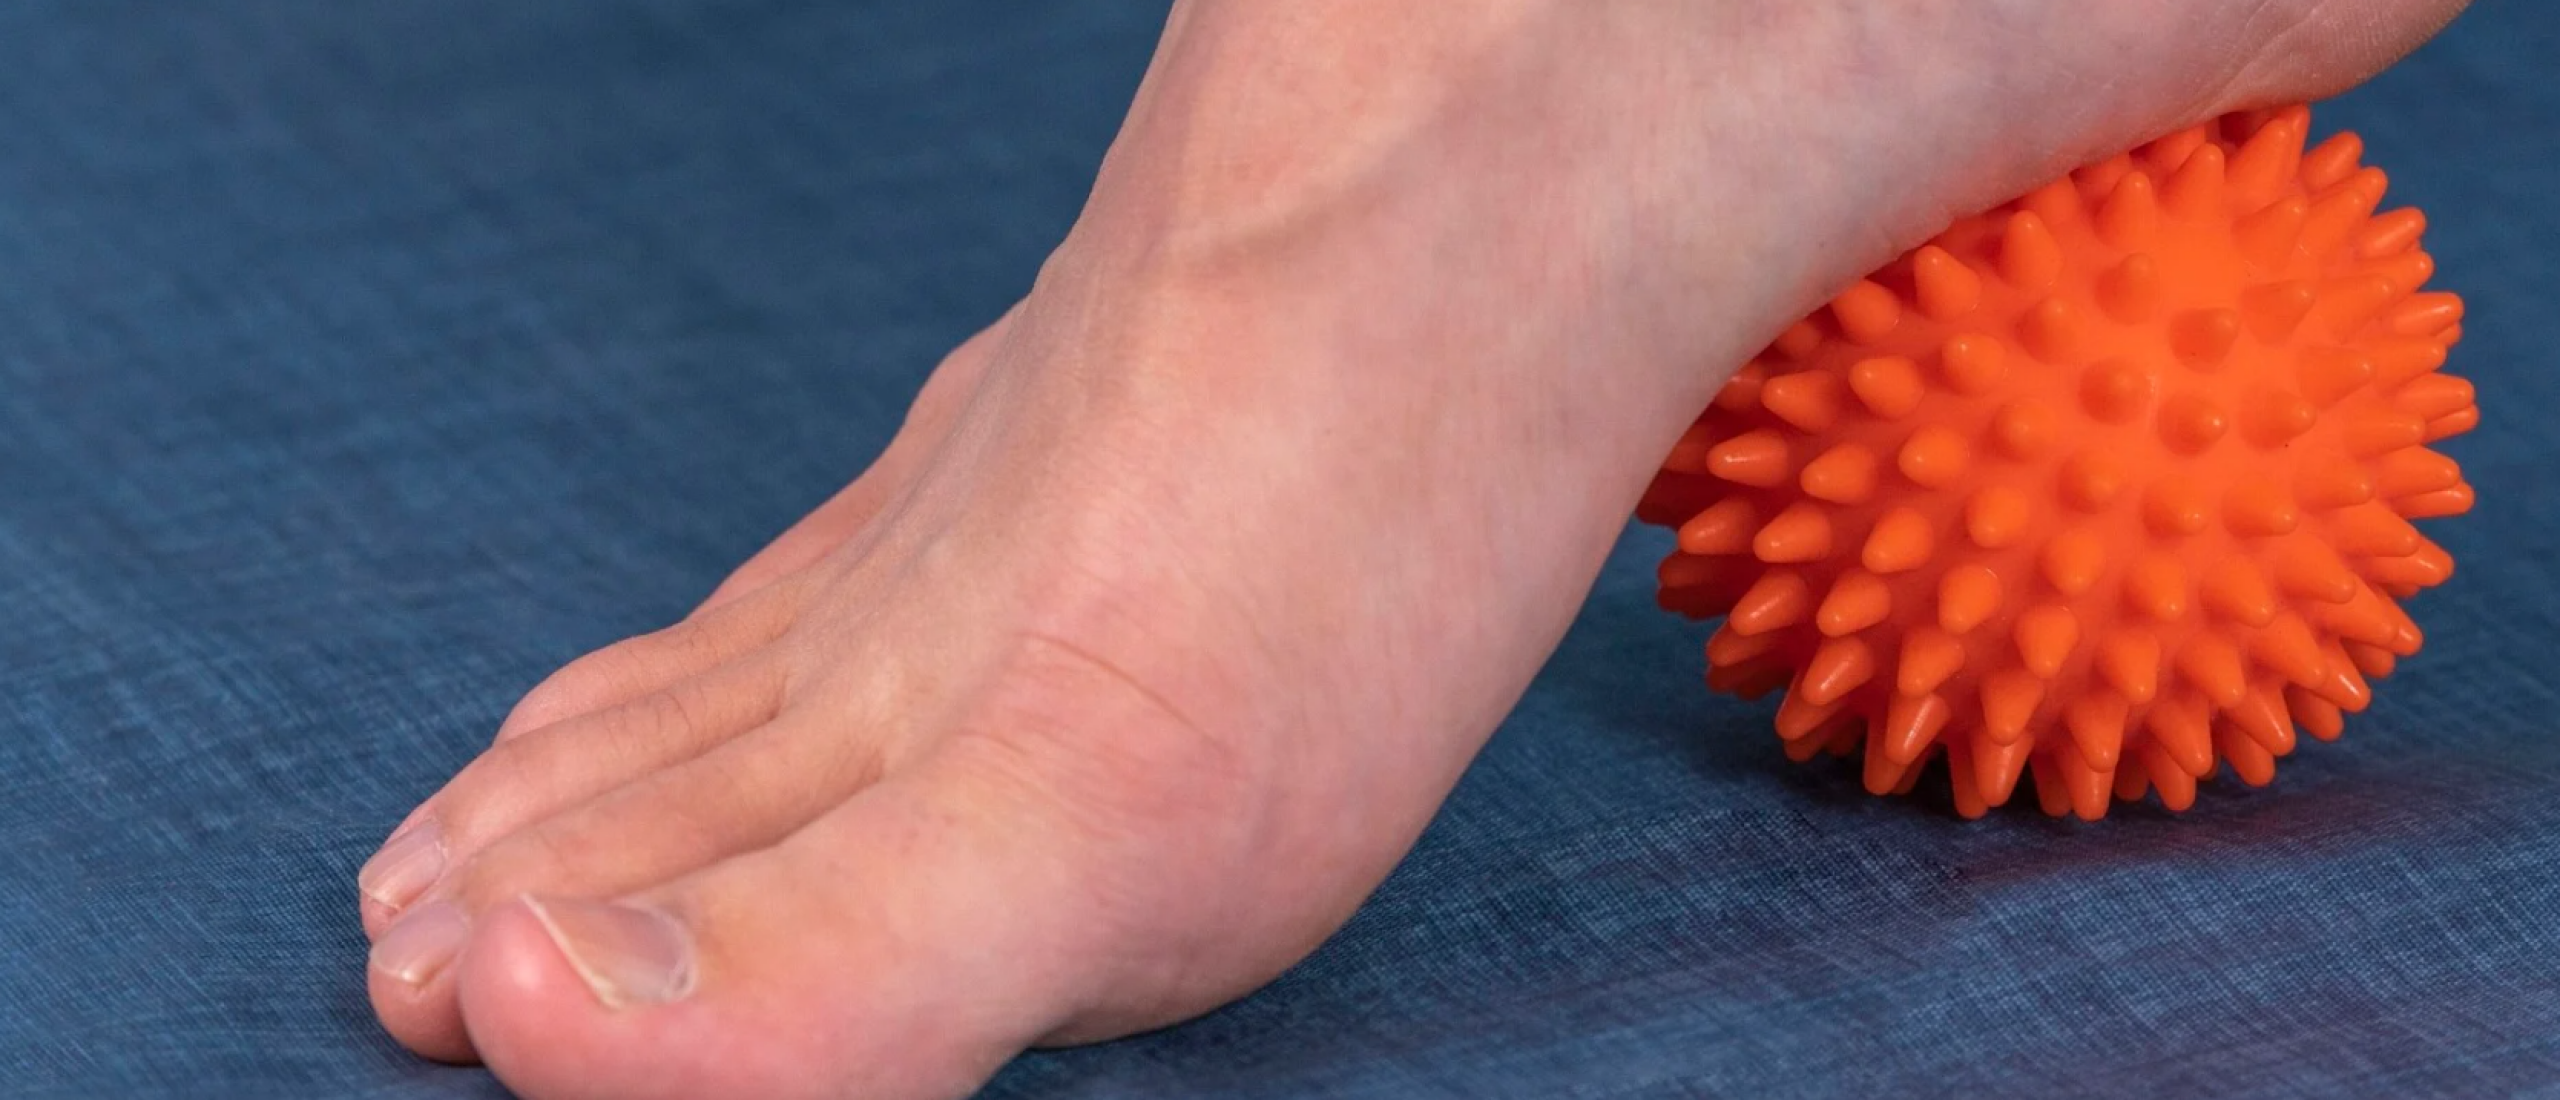 Waarom is voetmassage zo lekker - een heerlijke voetmassage